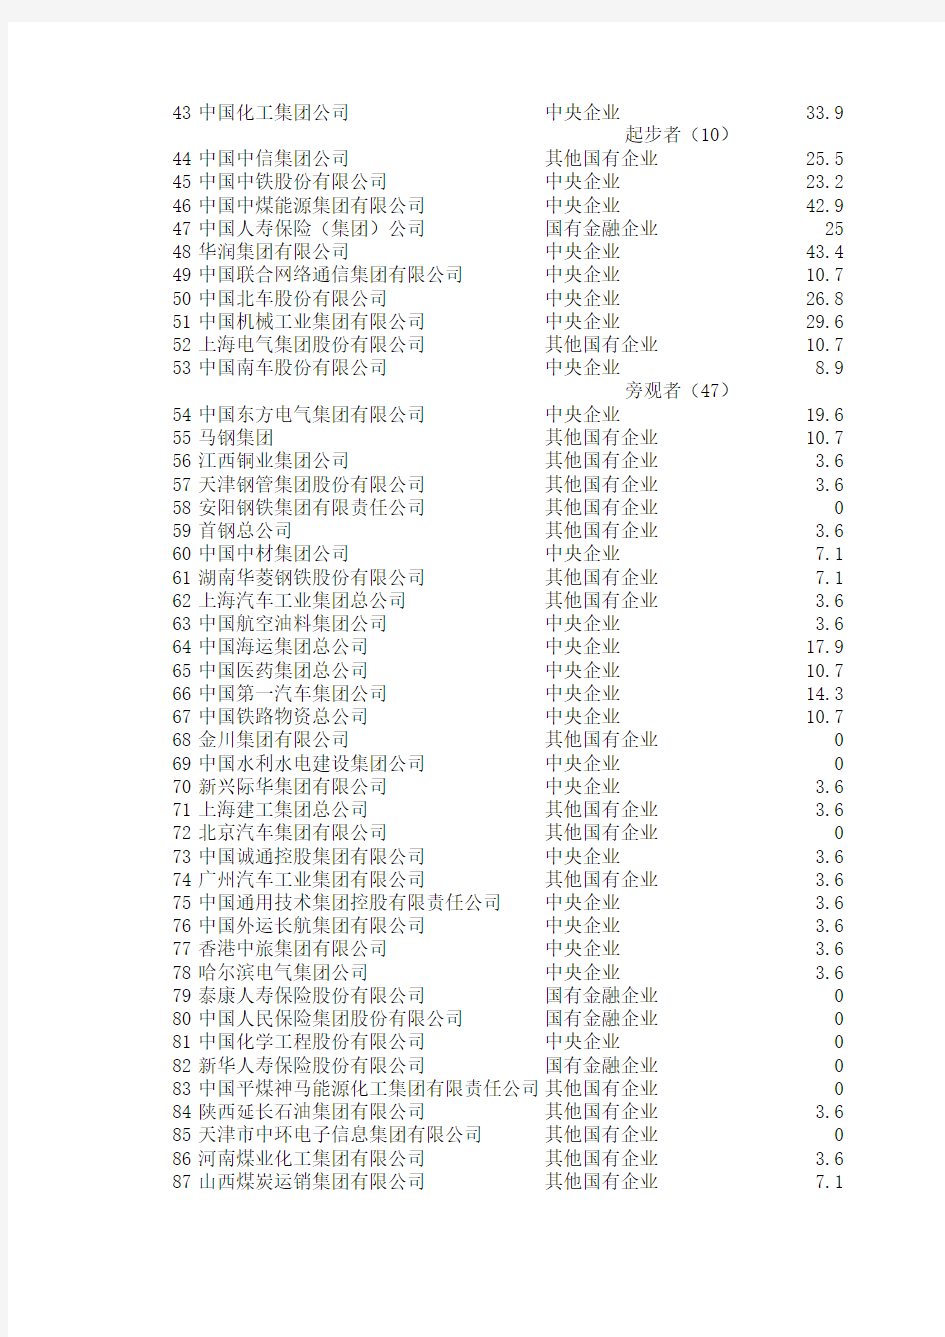 中国国有企业100强系列企业社会责任发展指数(2011)